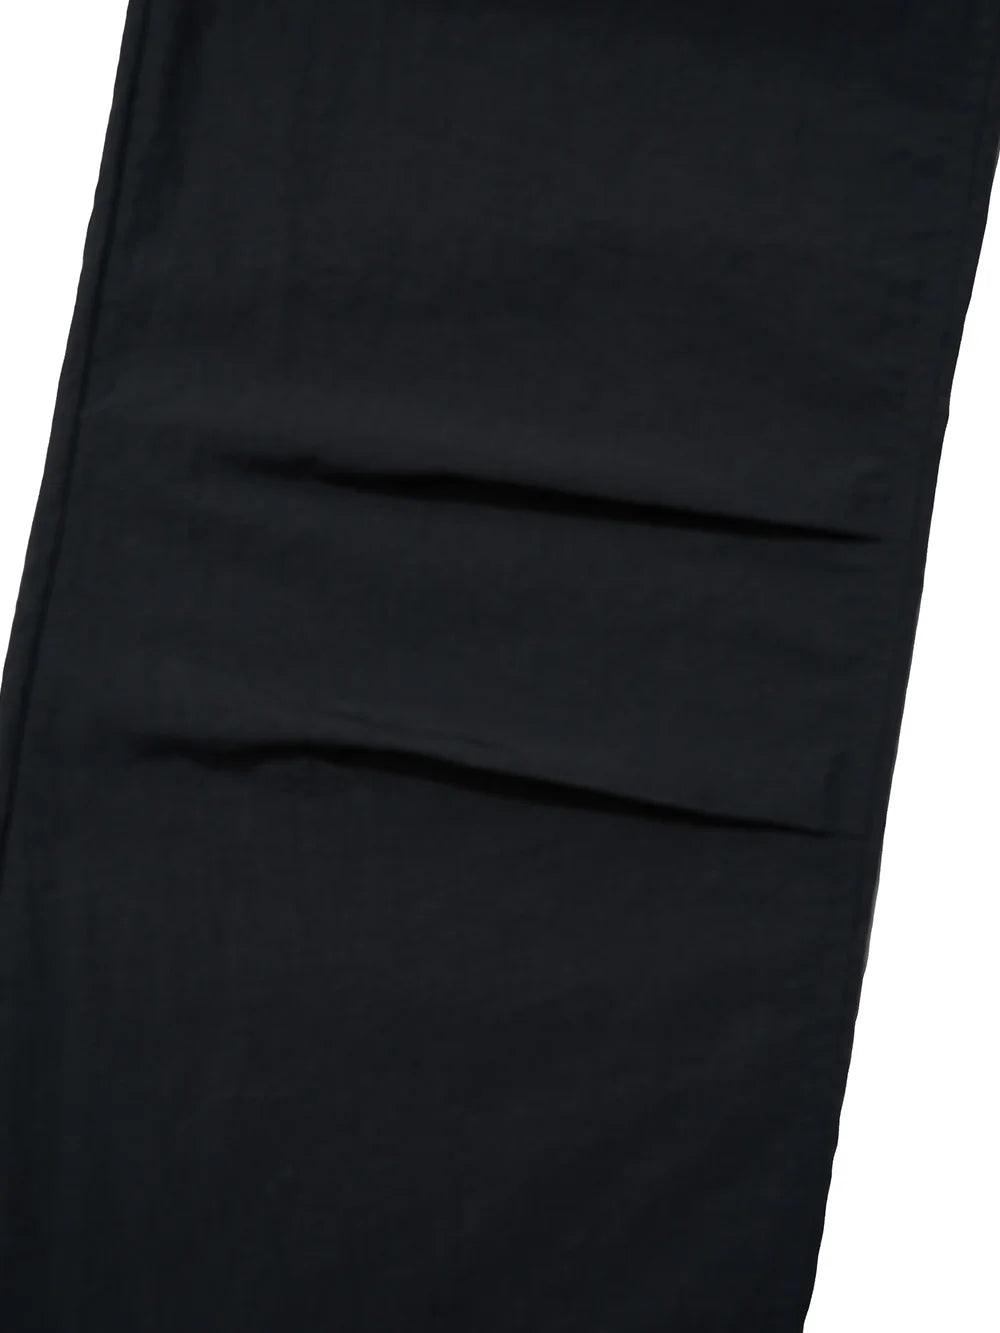 Partimento String Parachute Pants - Black - bottoms